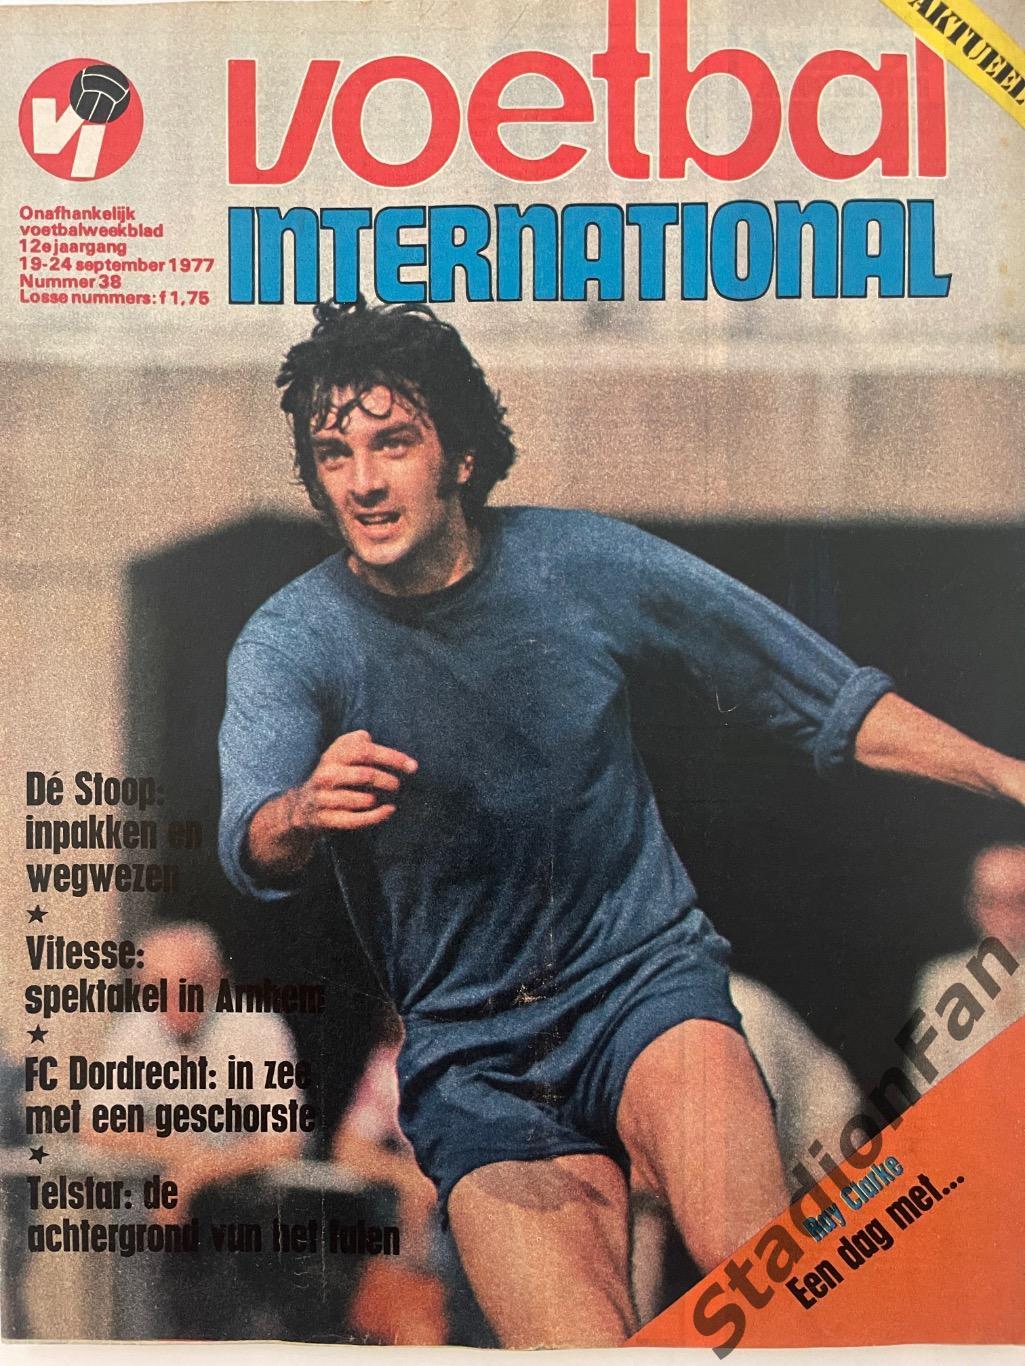 Журнал Voetbal nr.38 - 1977 год.